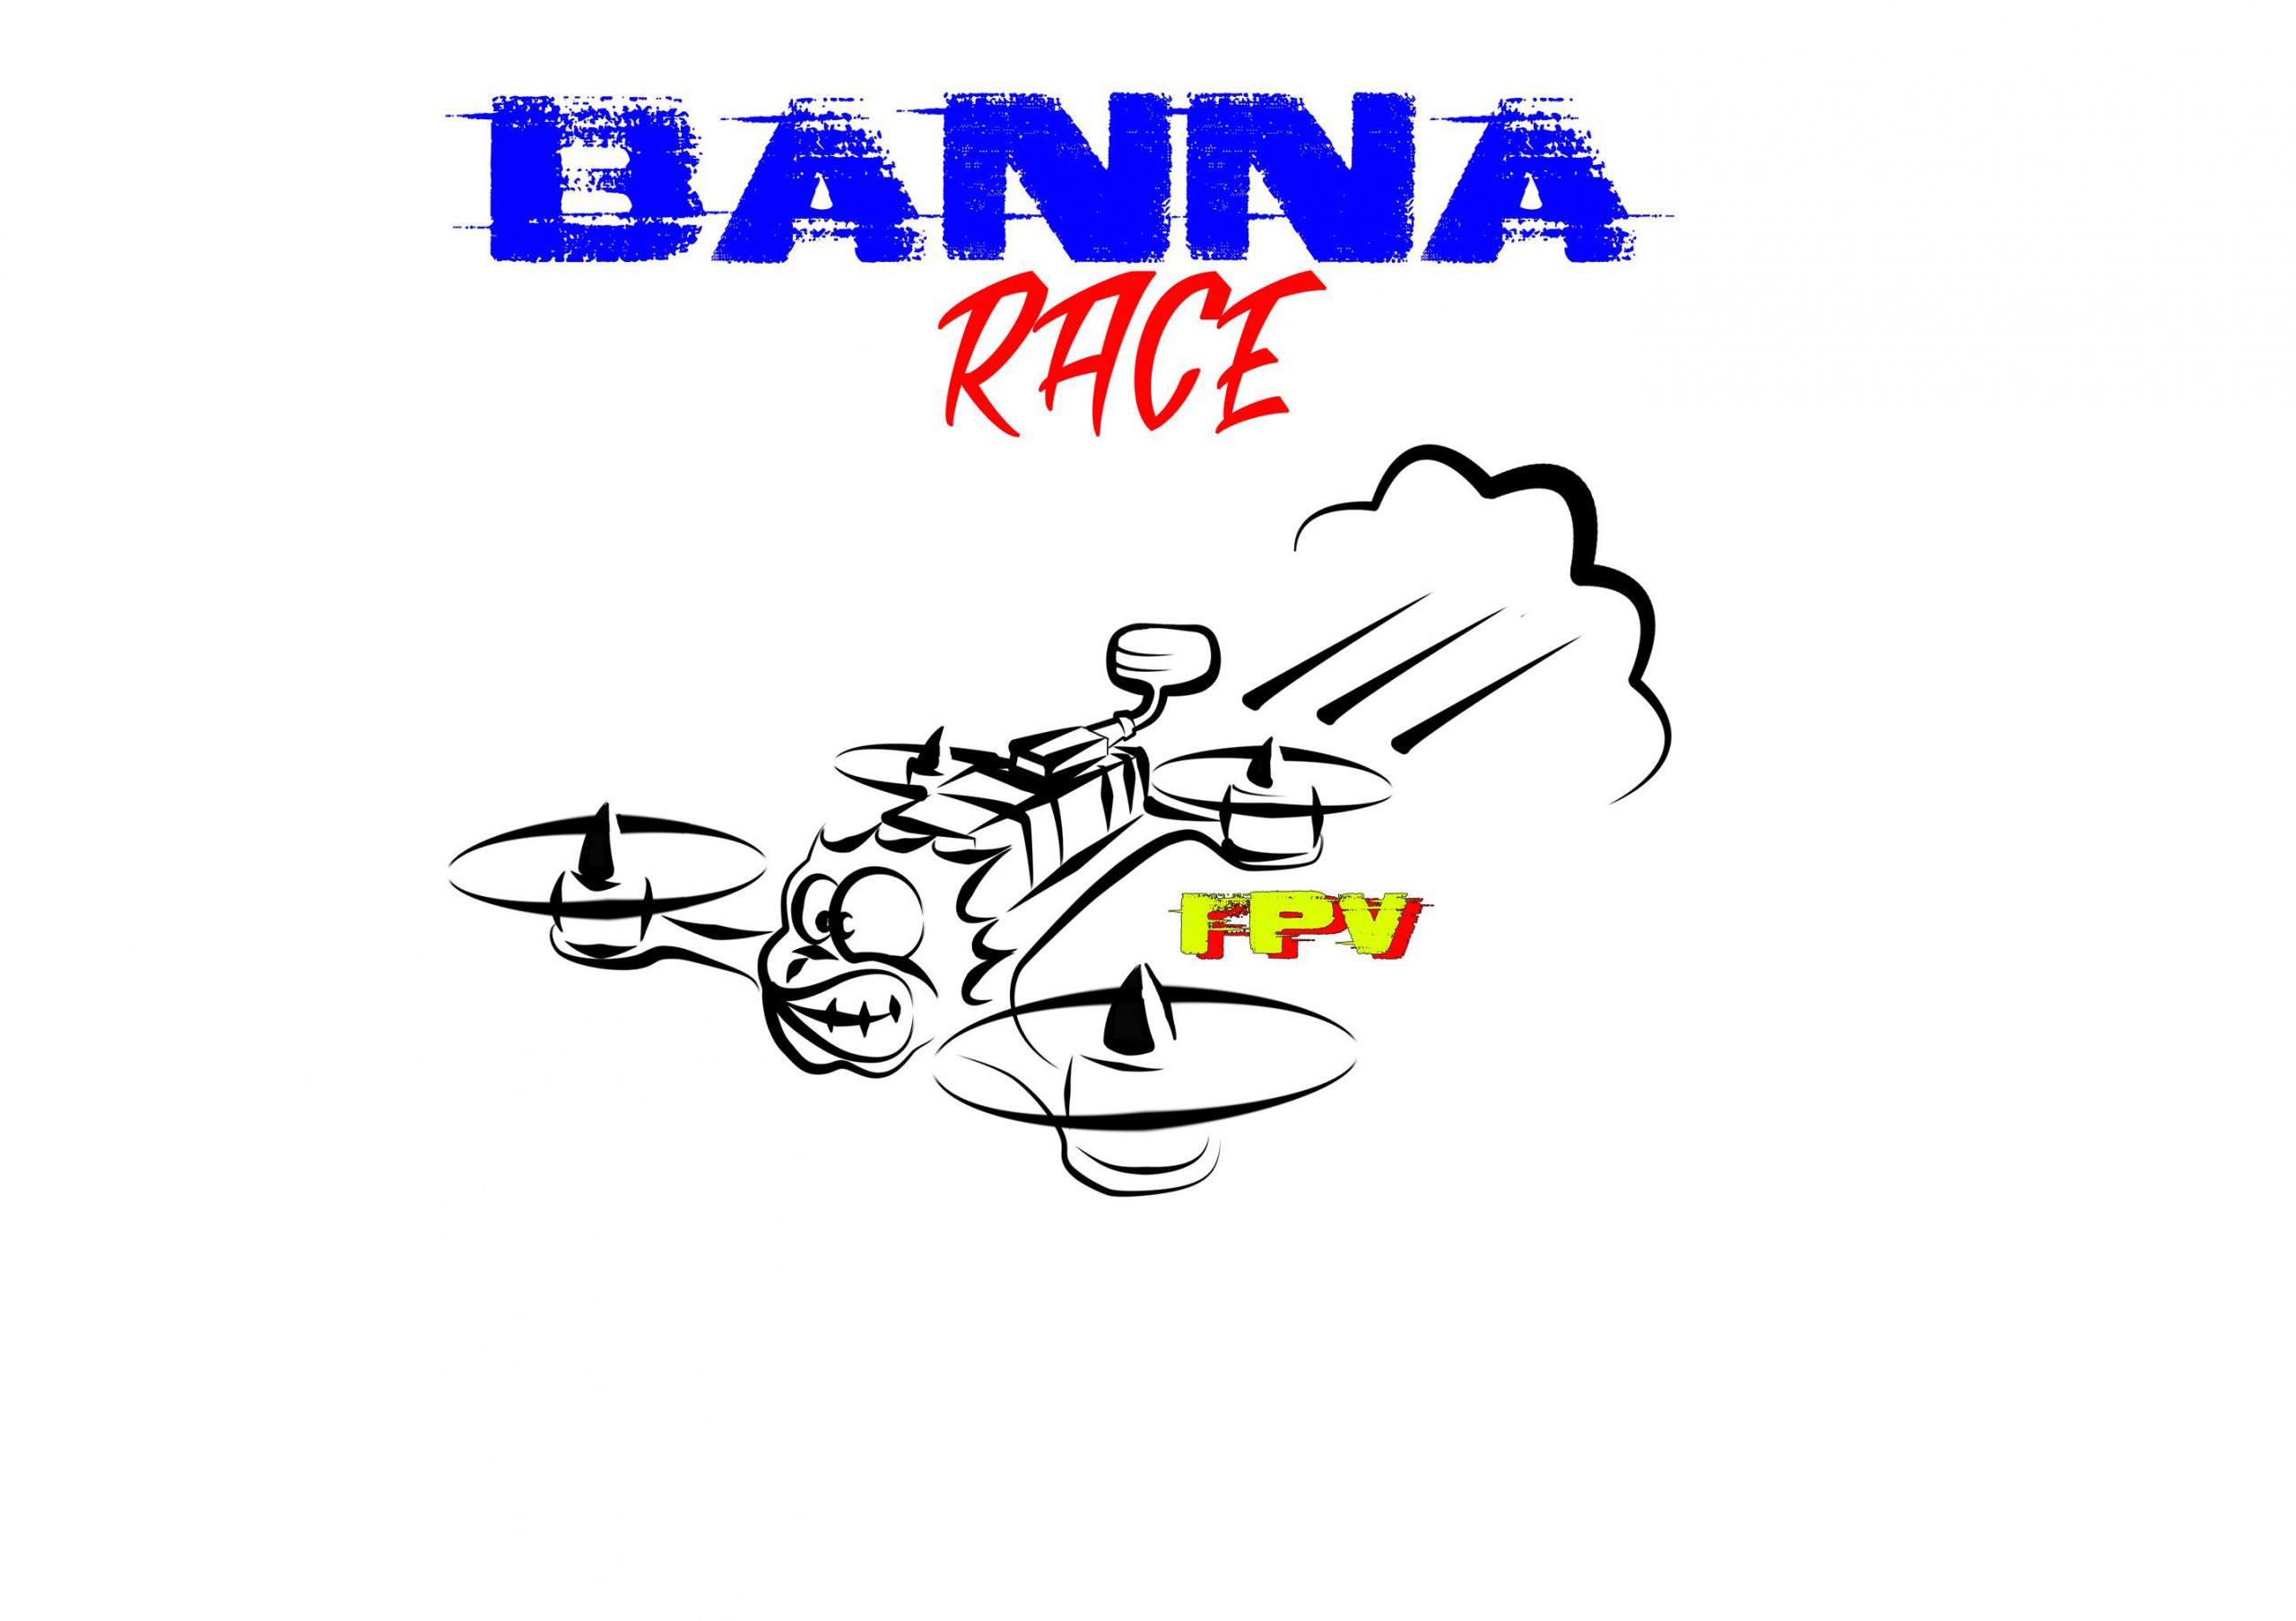 La BannaRace 2017, c’est ce week-end !